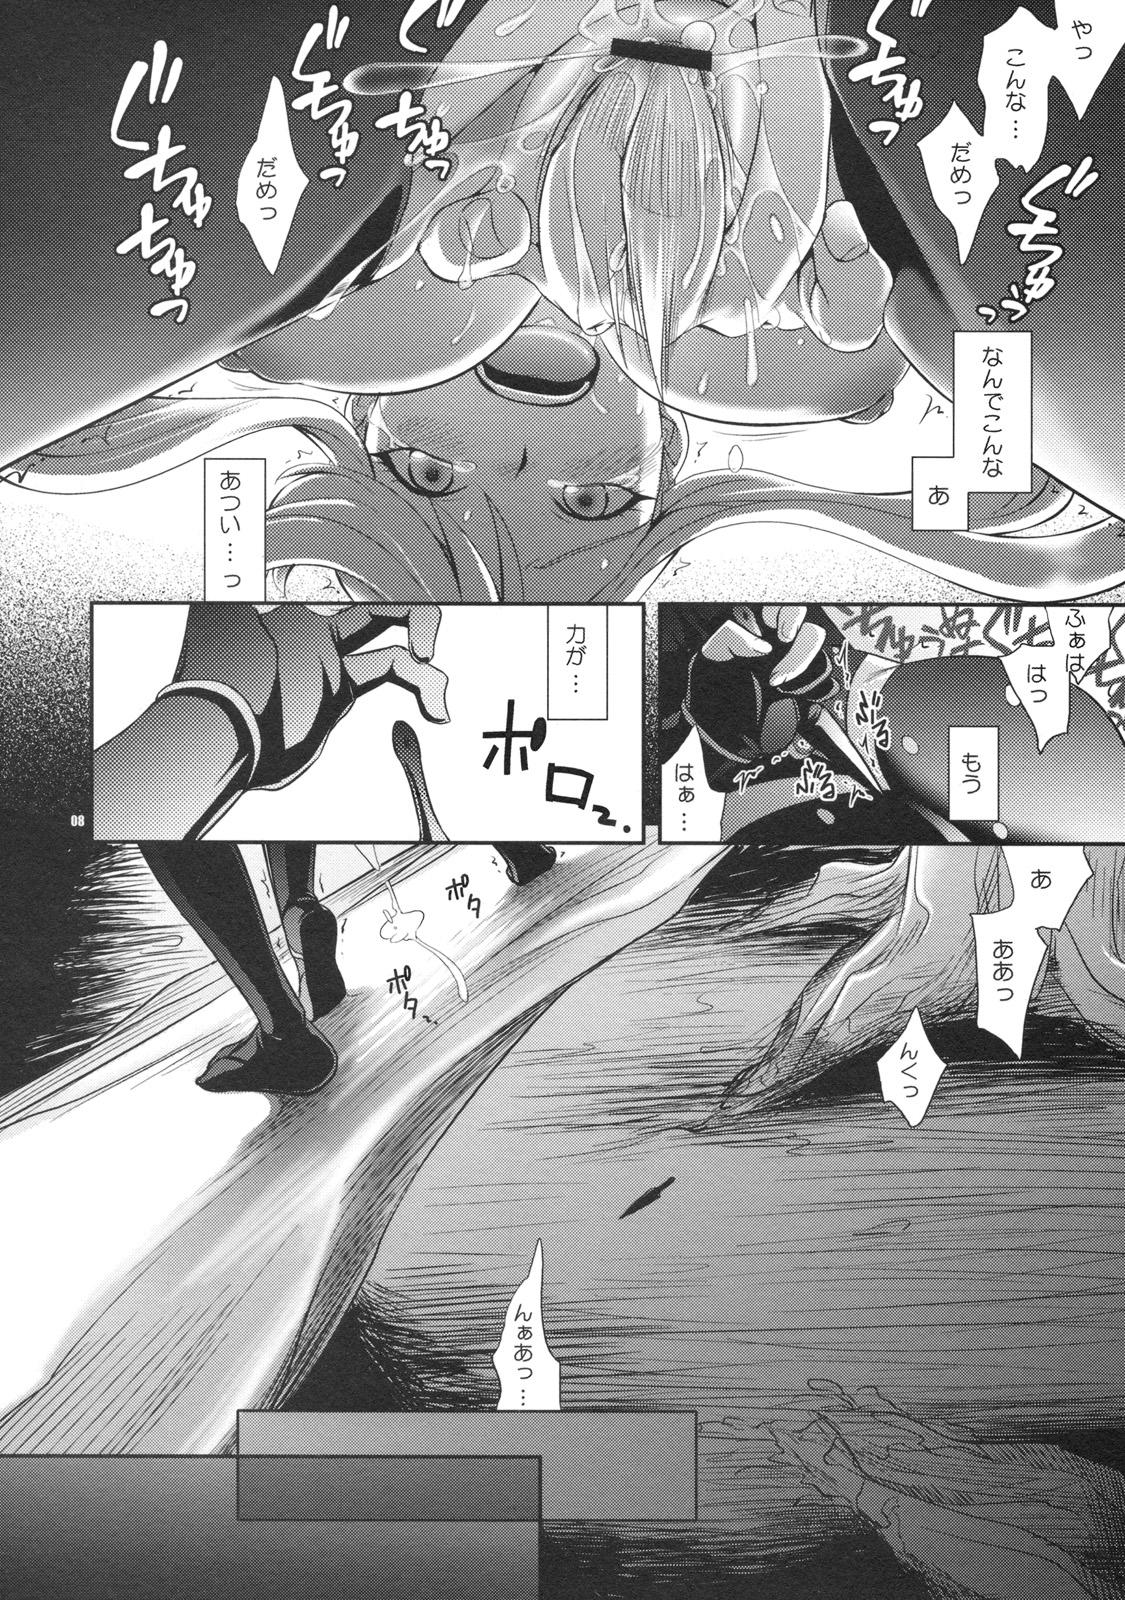 Piroca Oosame Kudasai Kenshin-sama! - Sengoku basara Gayclips - Page 7